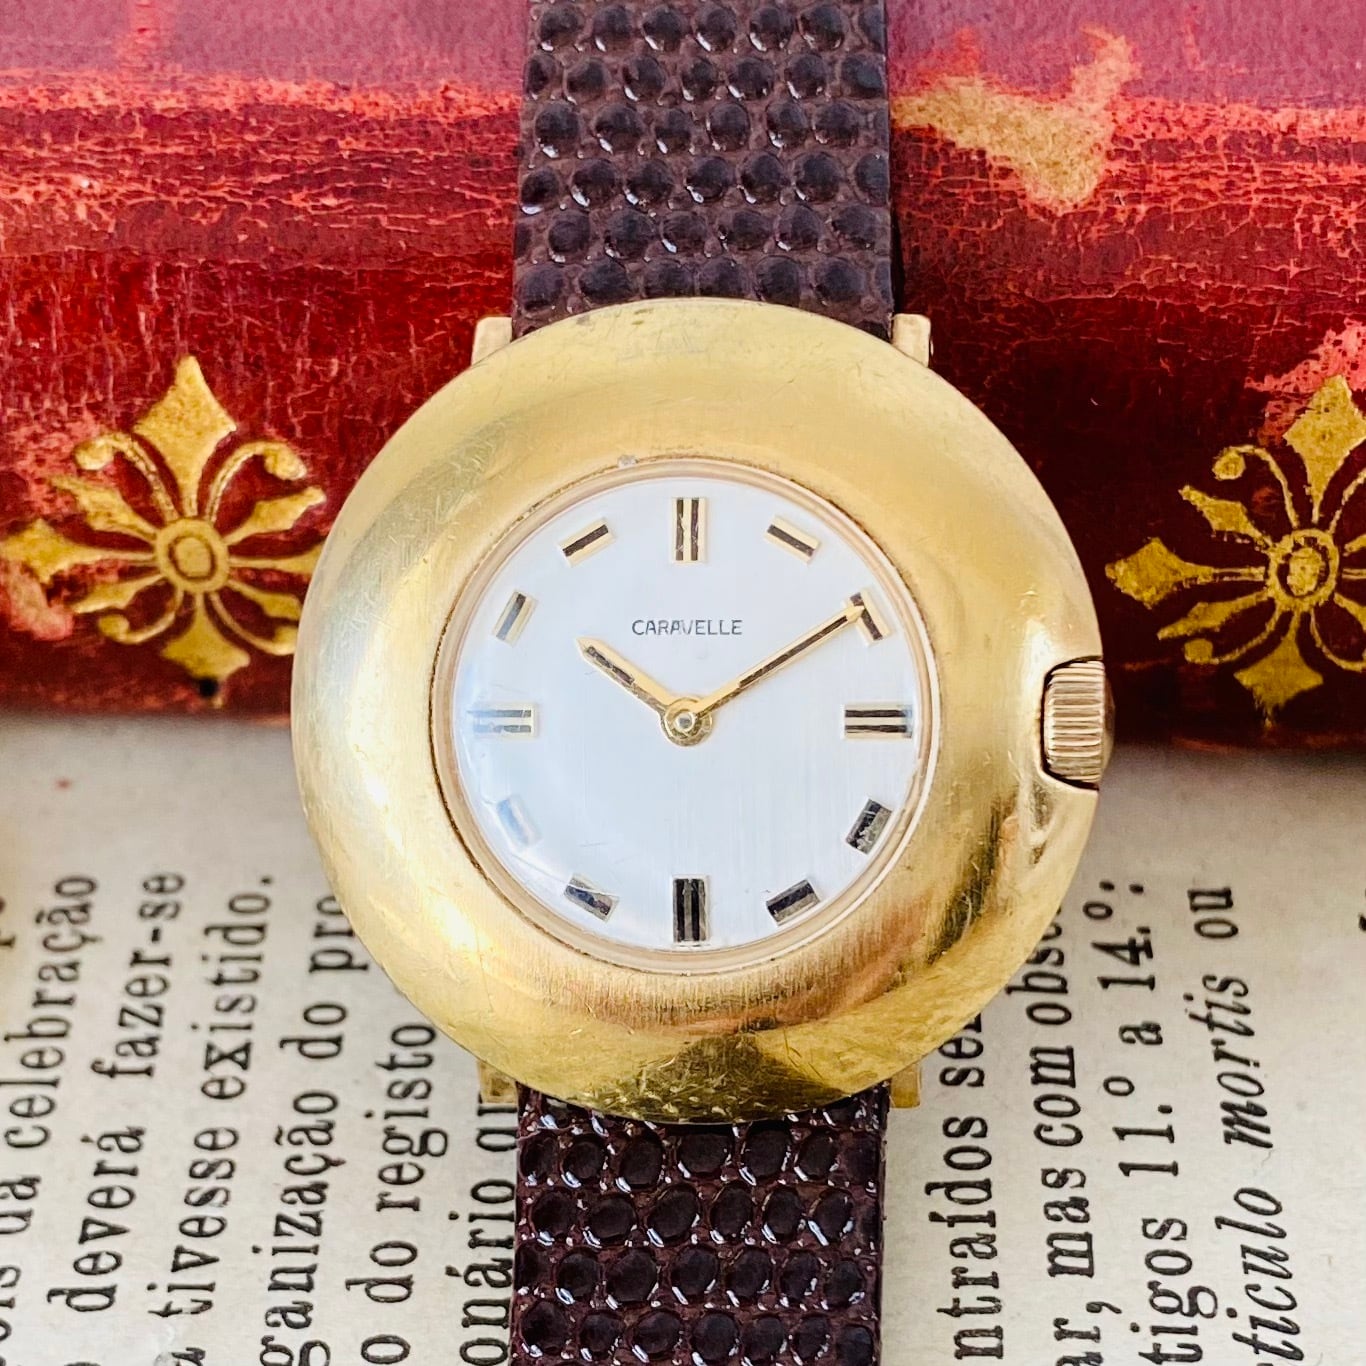 【高級腕時計キャラベル】Caravelle 1970年代 手巻き 17石 スイスレオウォッチ